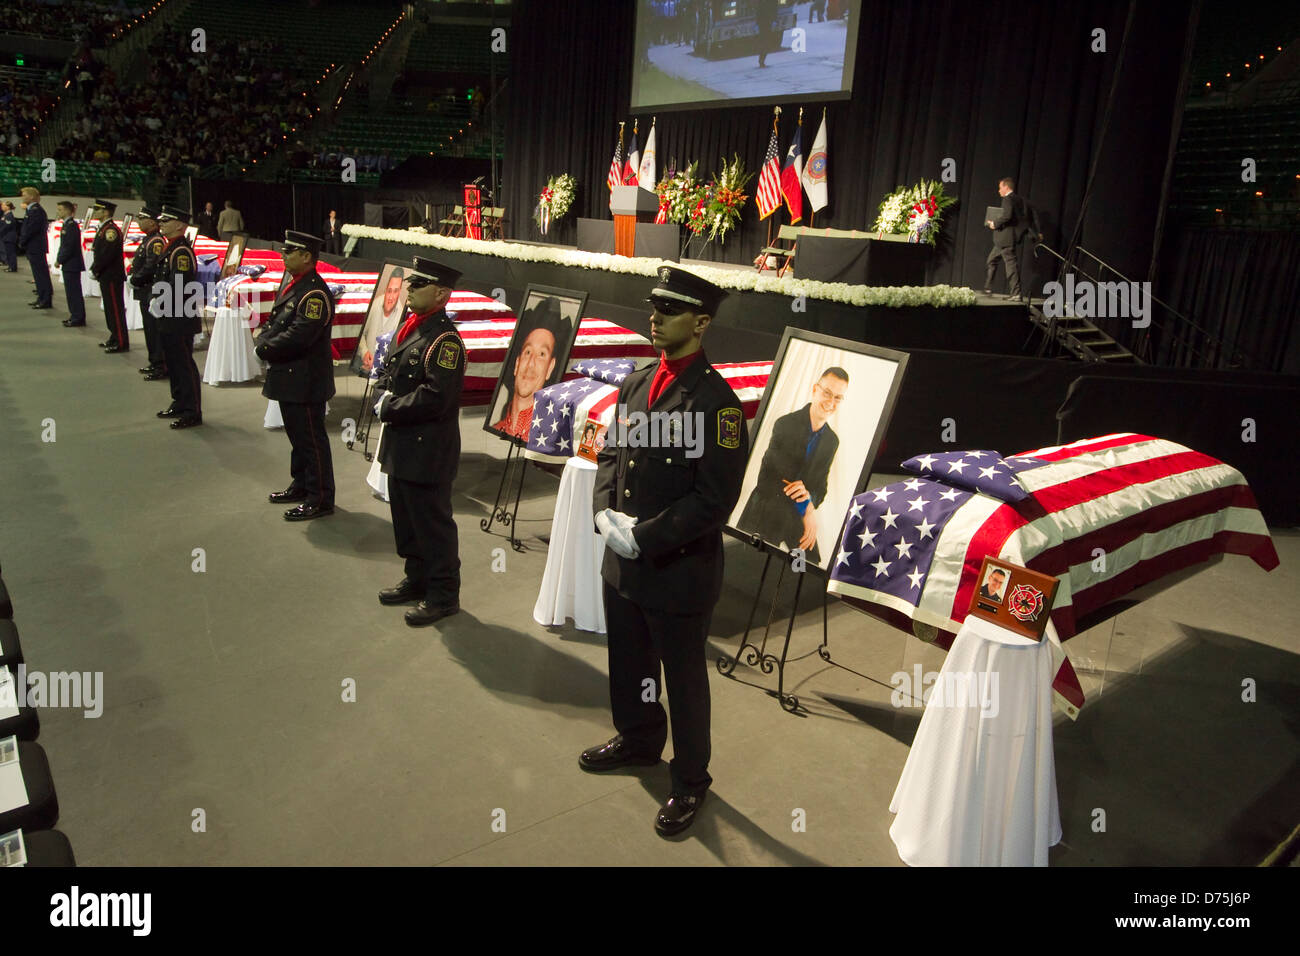 Les pompiers montent la garde devant des cercueils recouverts de drapeaux américains au cours du service commémoratif à Waco, Texas Banque D'Images